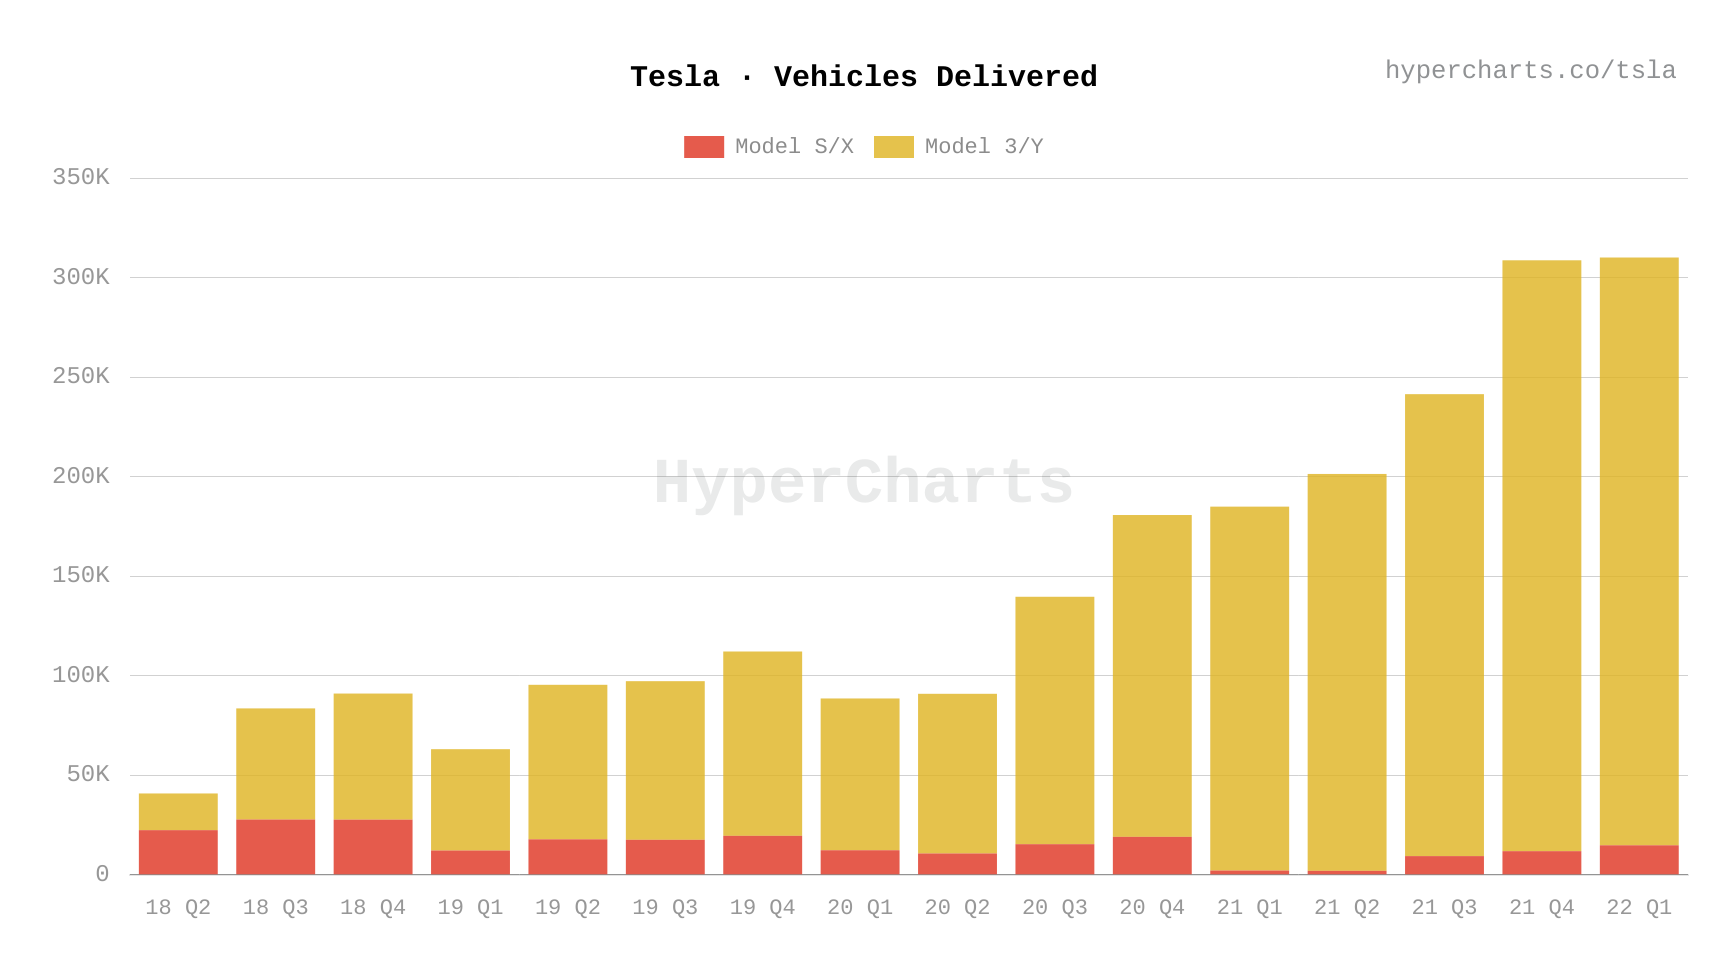 Tesla vehicle deliveries since 2018